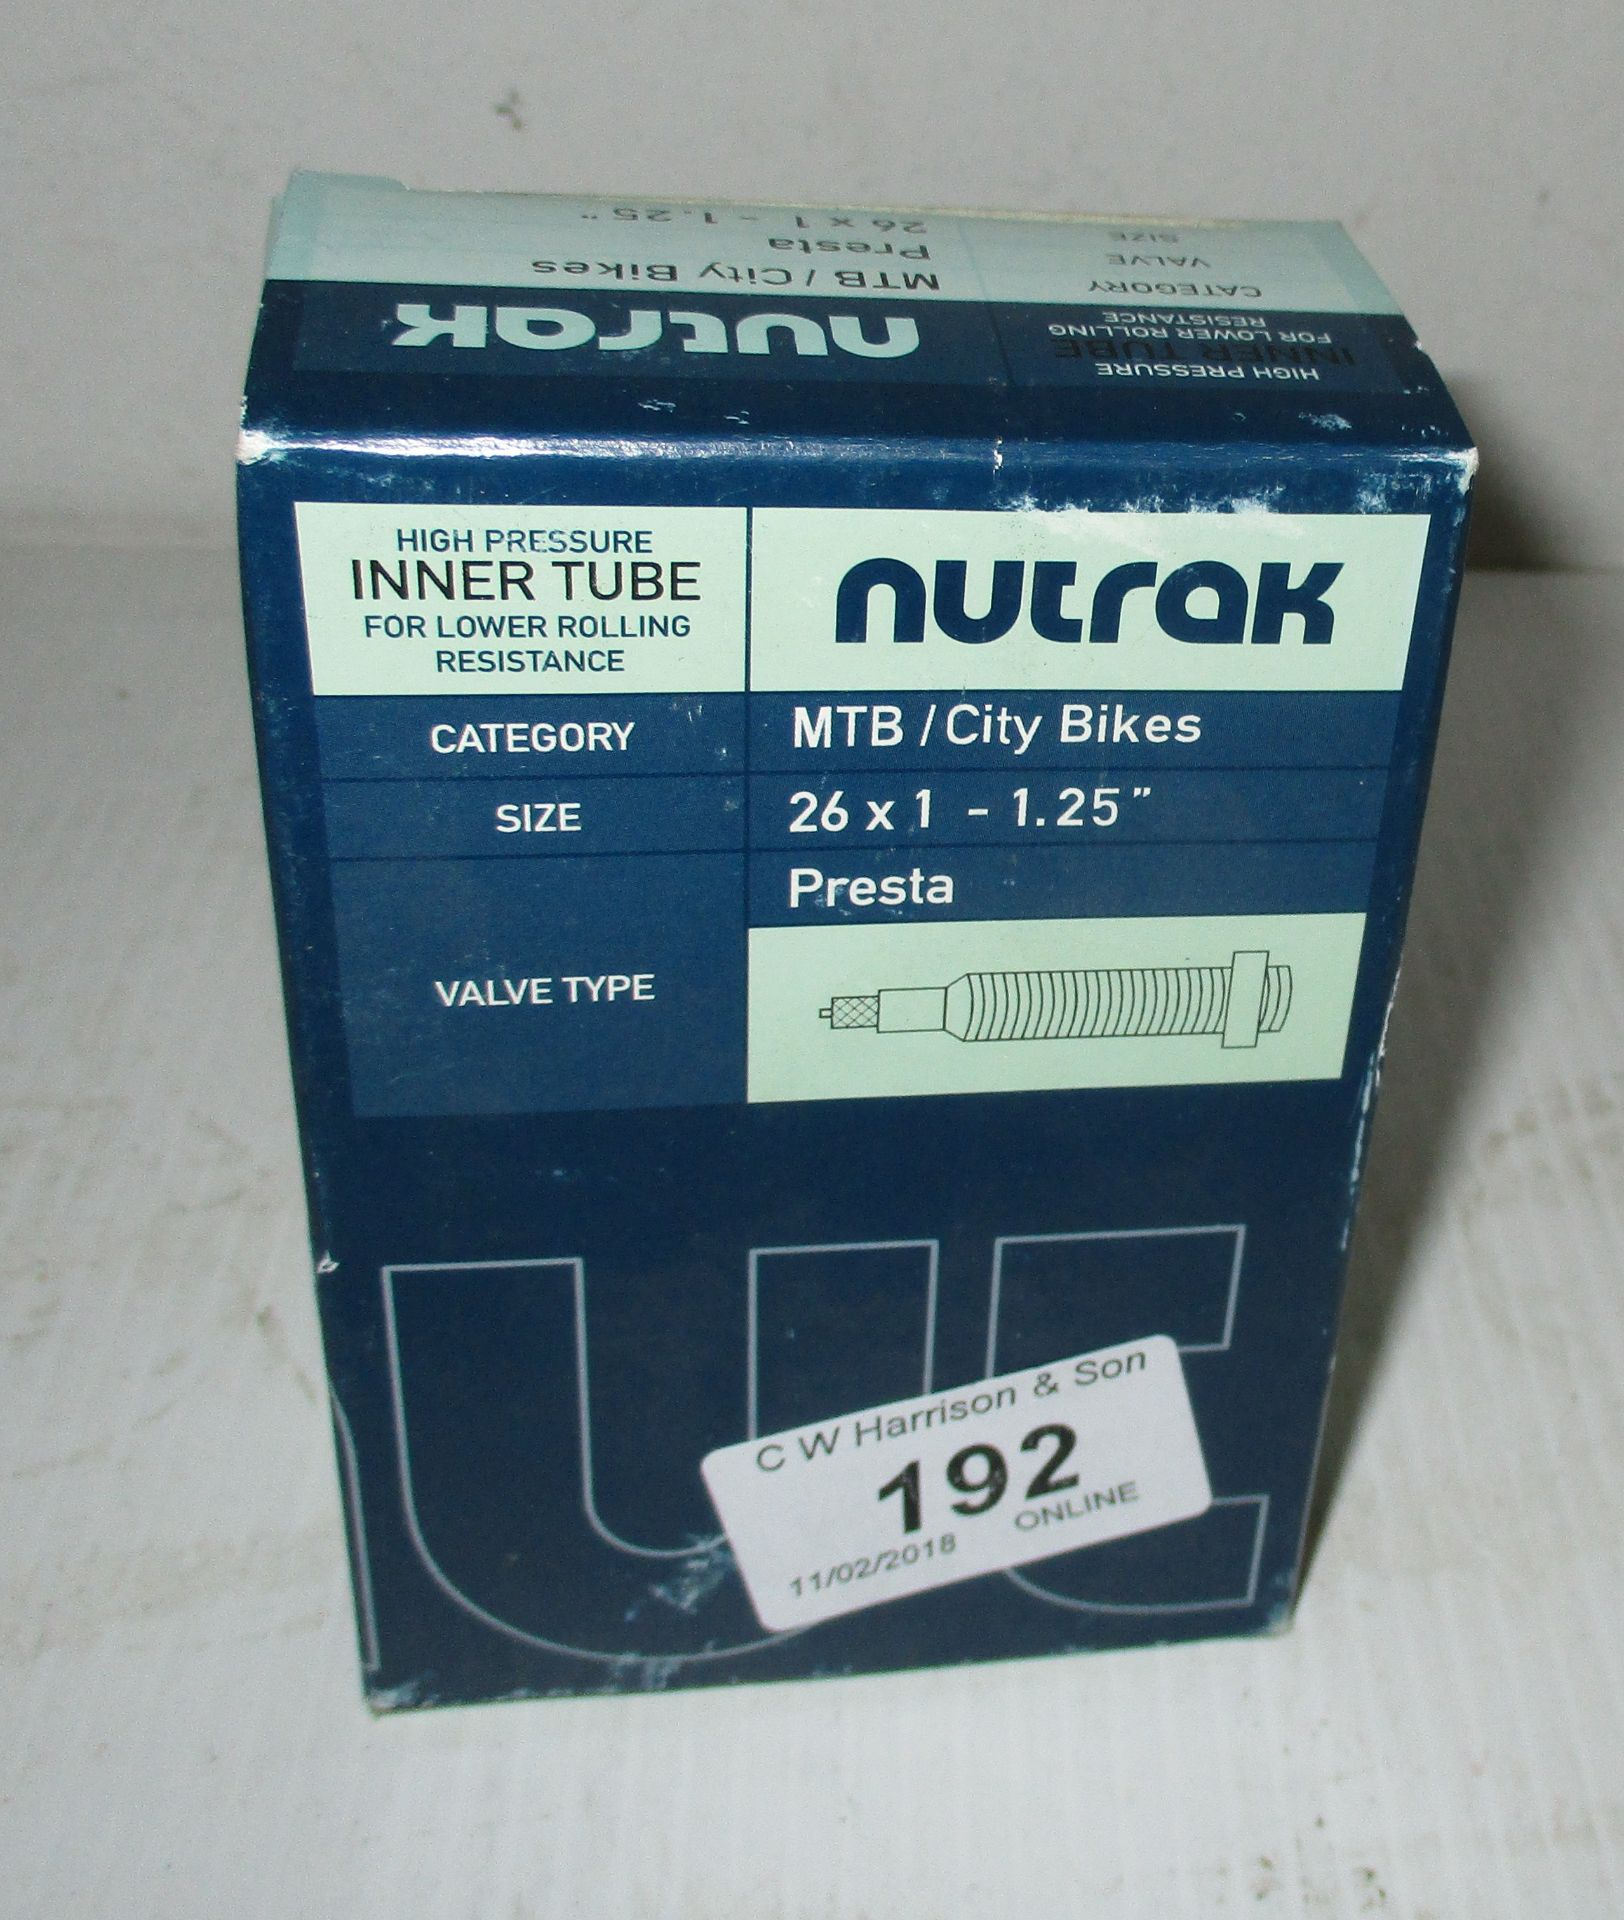 5 x Nutrak 26" x 1 Presta inner tubes